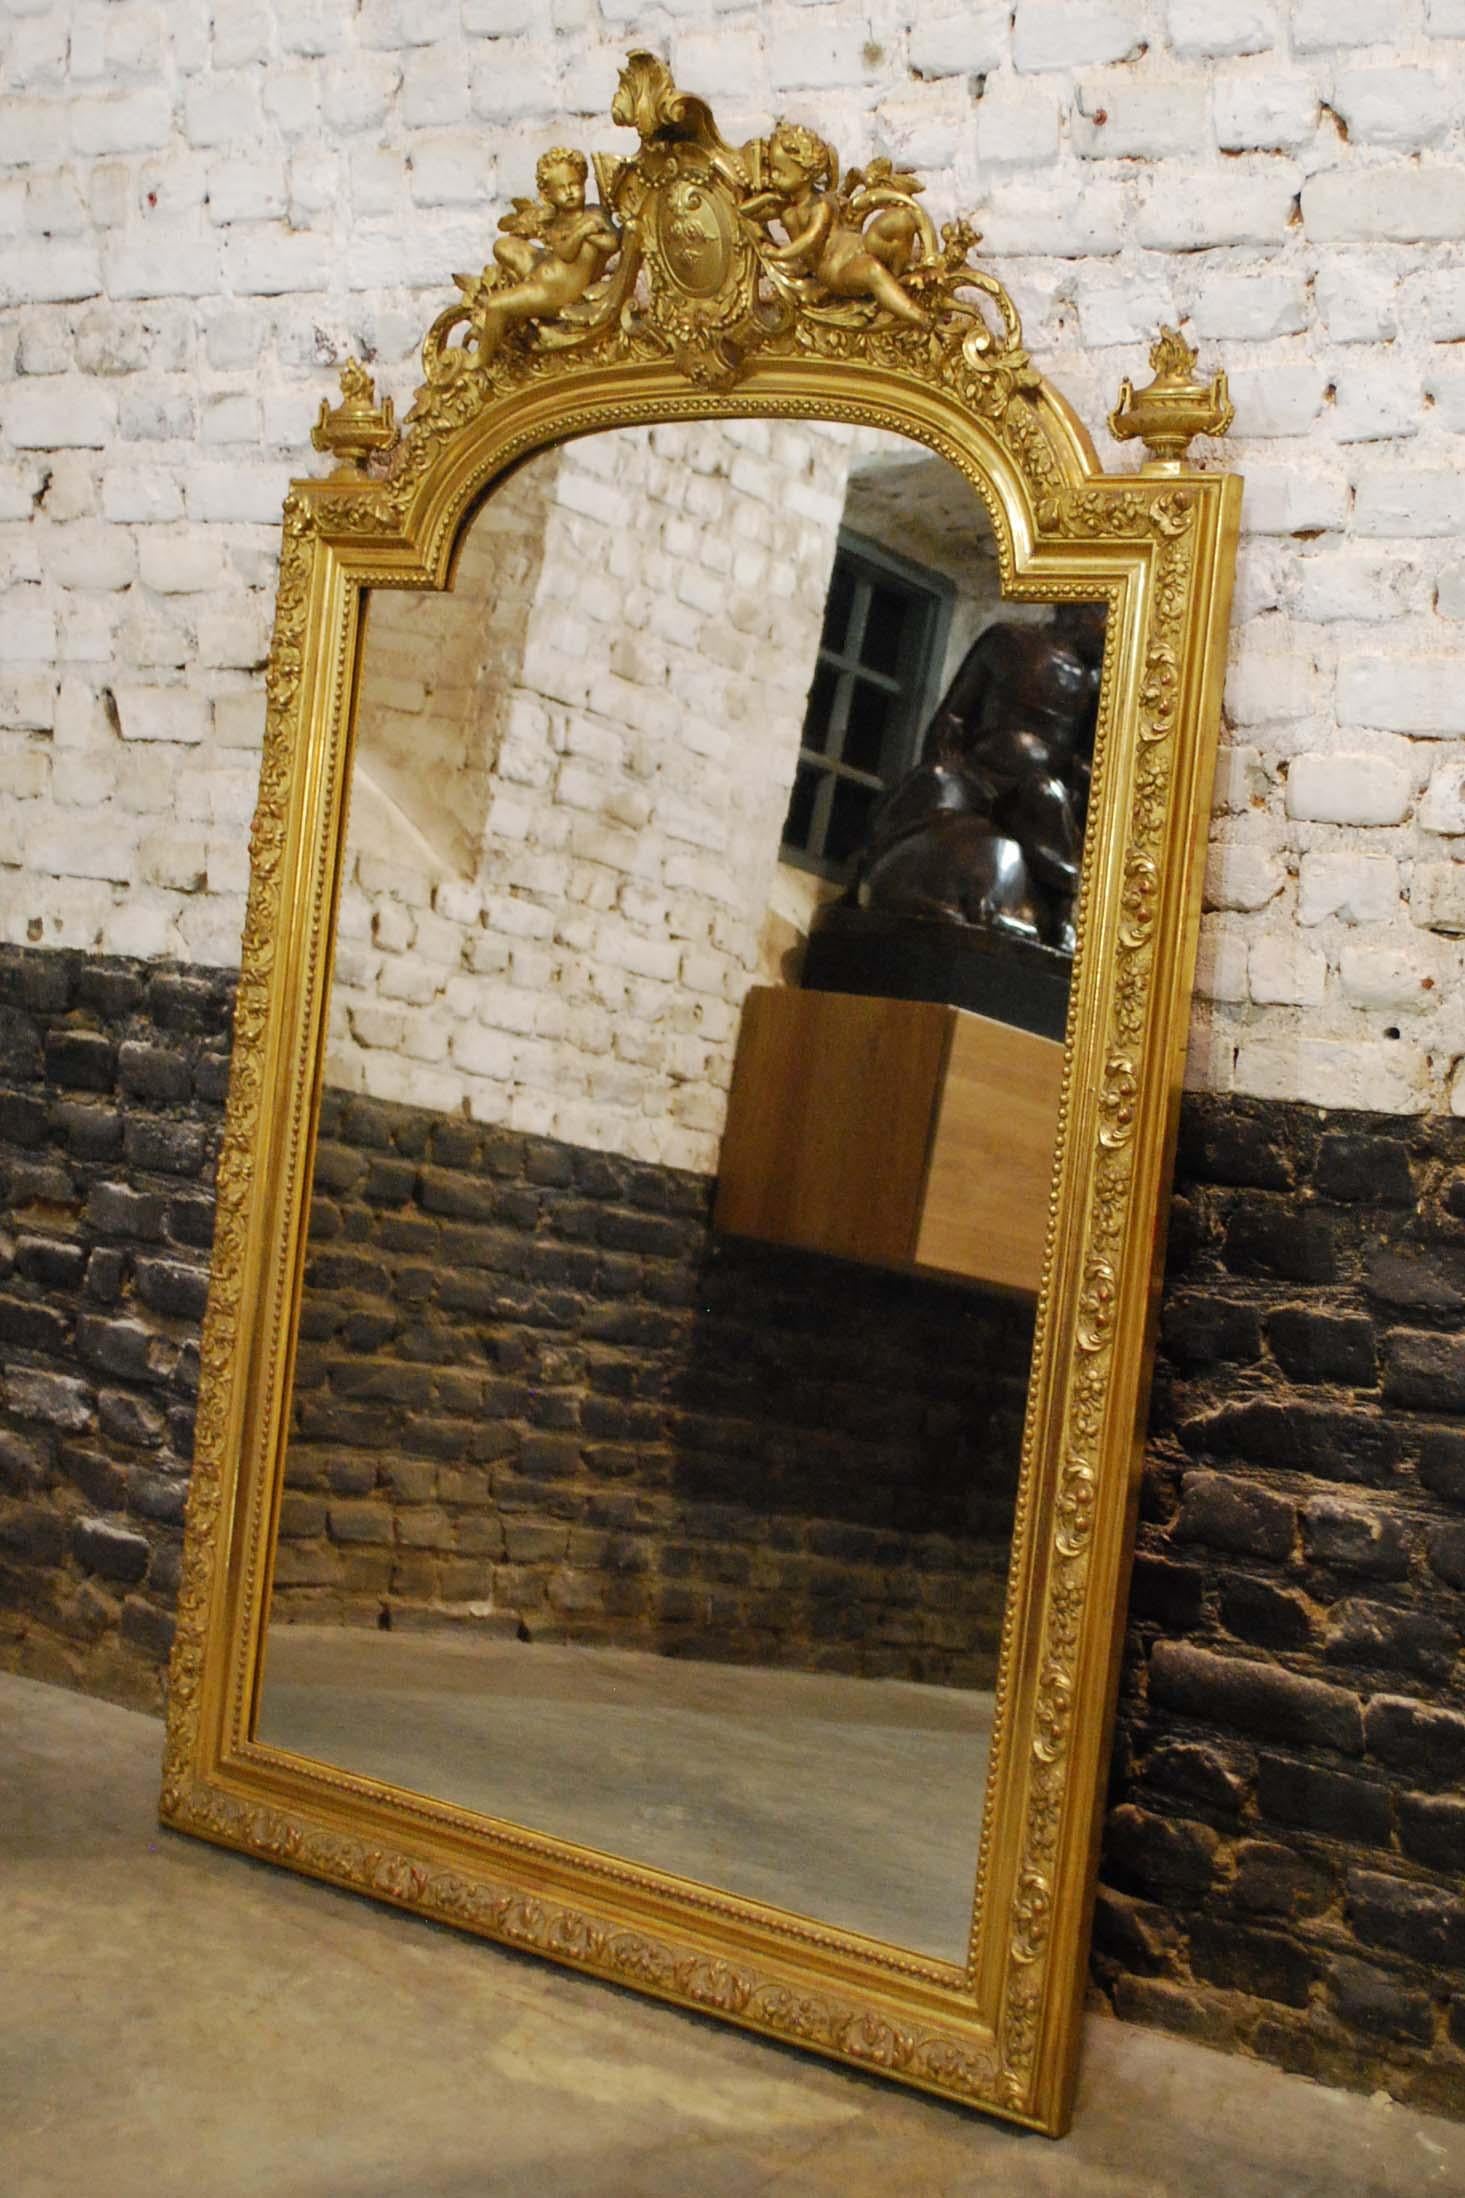 Ce beau miroir baroque doré est fabriqué en France, vers 1850. 
Le cadre a un sommet arqué et est enrichi de décorations complexes. Le miroir présente une crête ornée d'un médaillon central flanqué de deux anges ou putti et d'éléments acanthes et